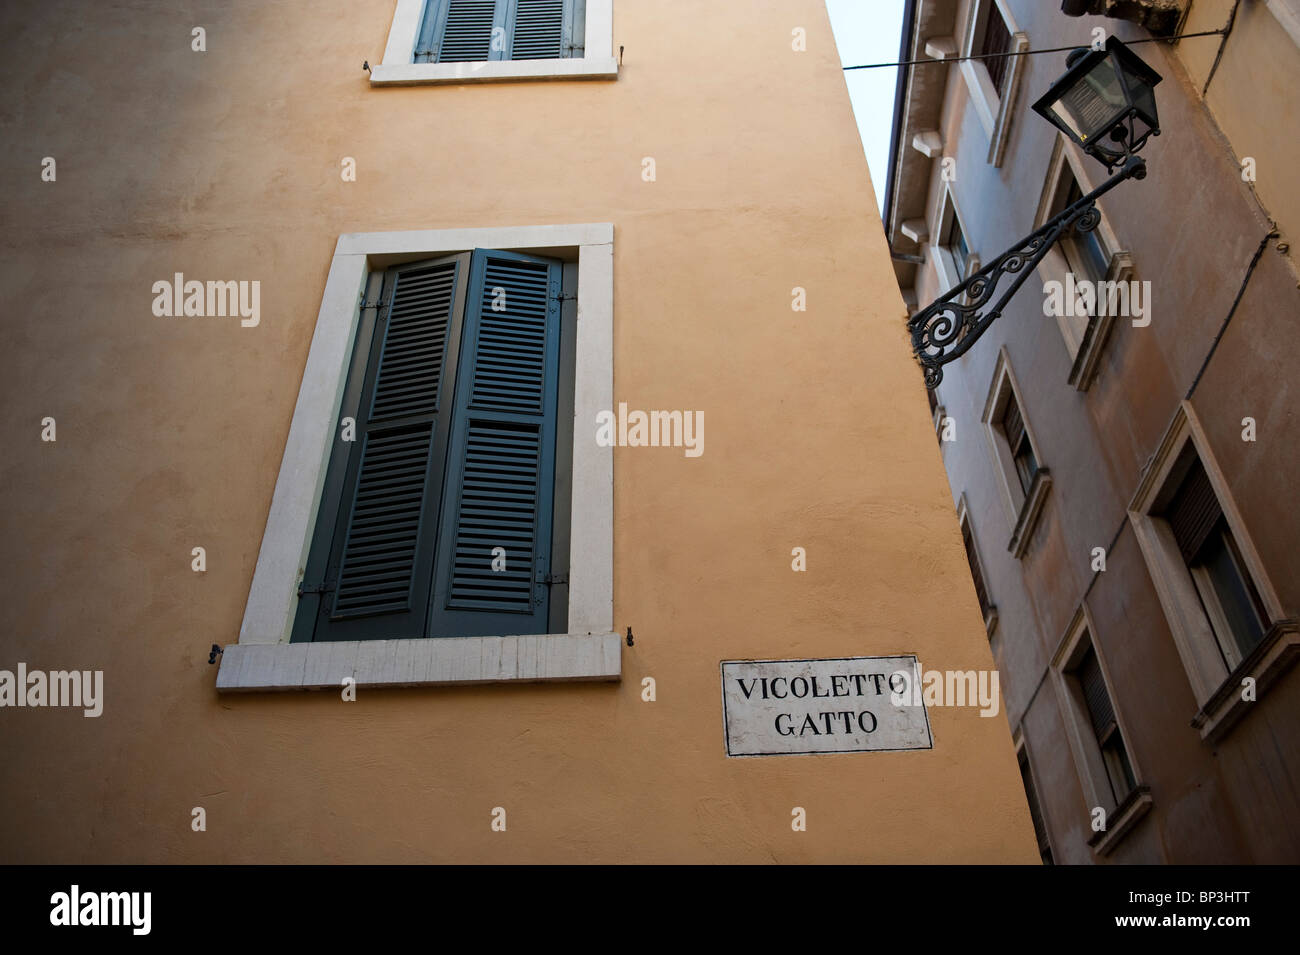 Vicoletto gatto Verona Italy Stock Photo